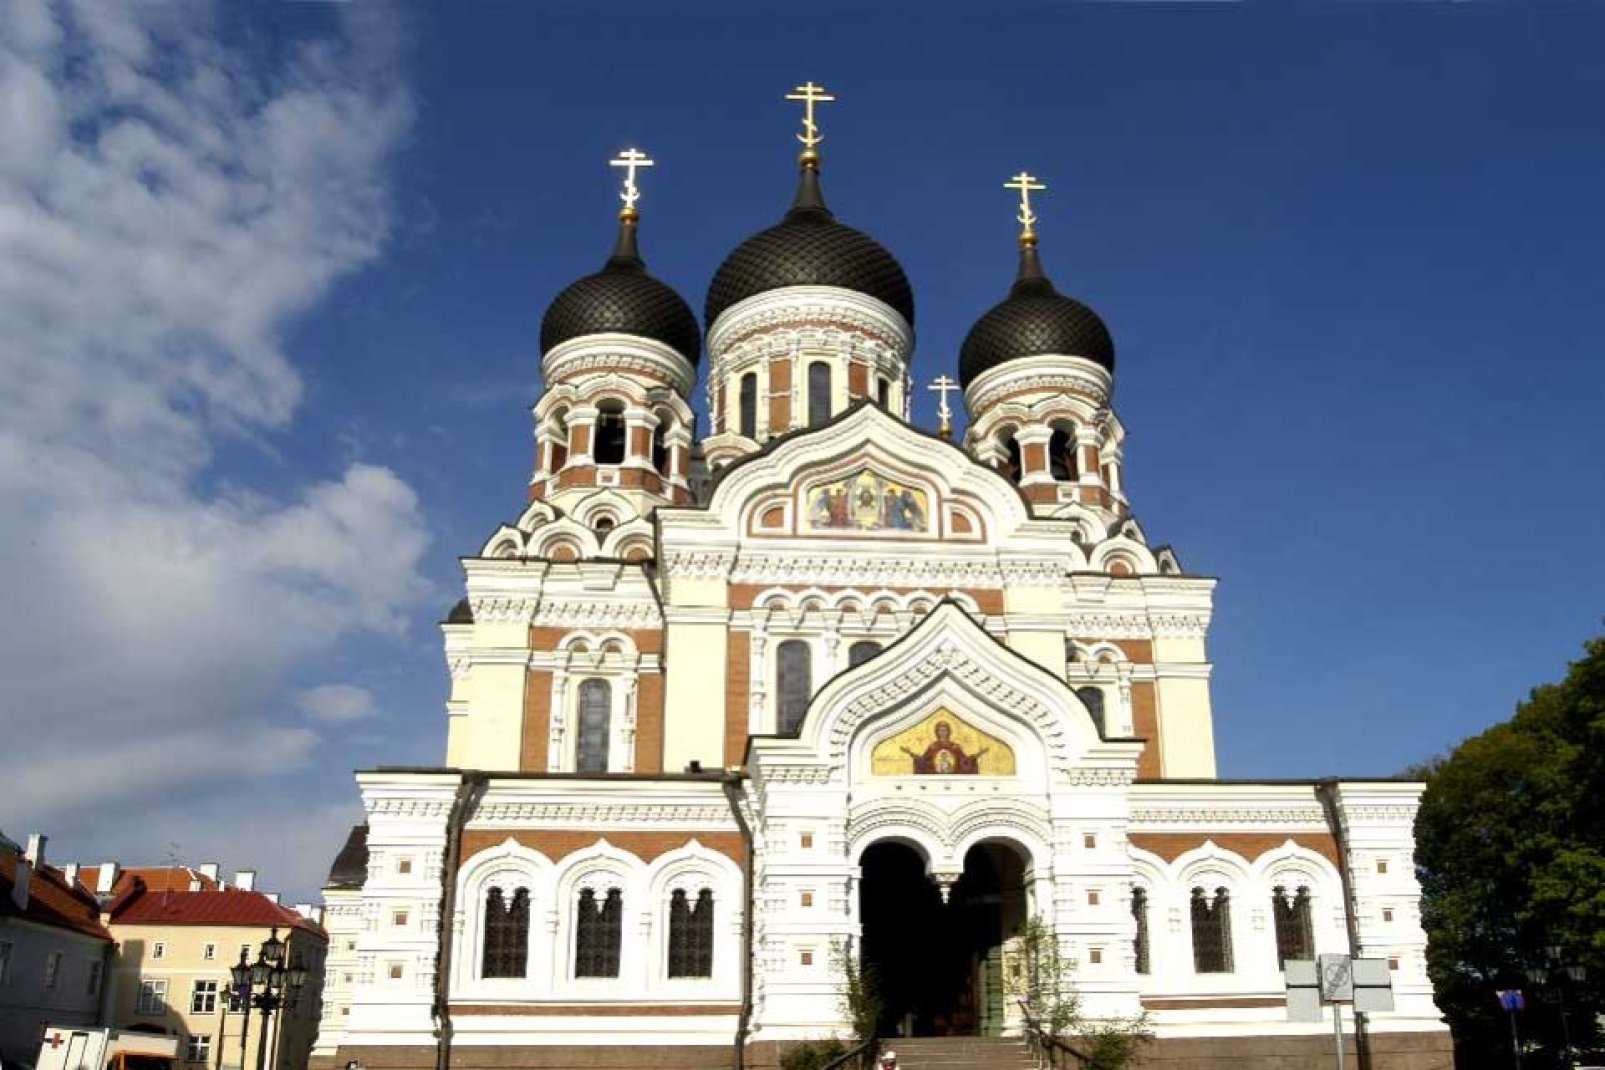 Diese griechisch-orthodoxe Kathedrale wurde in der reinsten Tradition des russischen Sakralbaus errichtet.